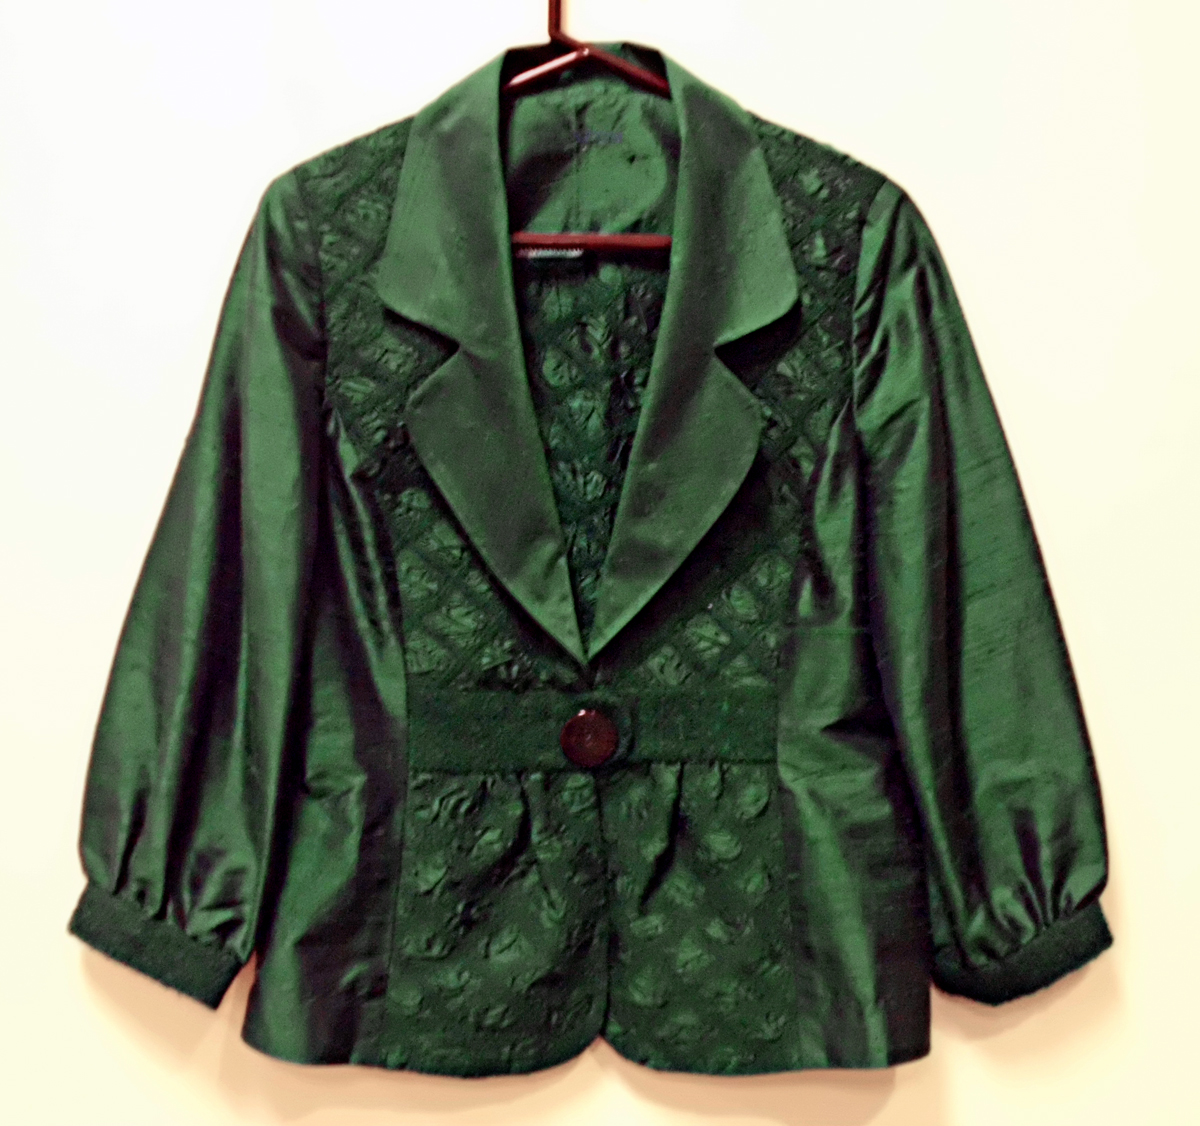 emerald-jacket_7740032422_o.jpg